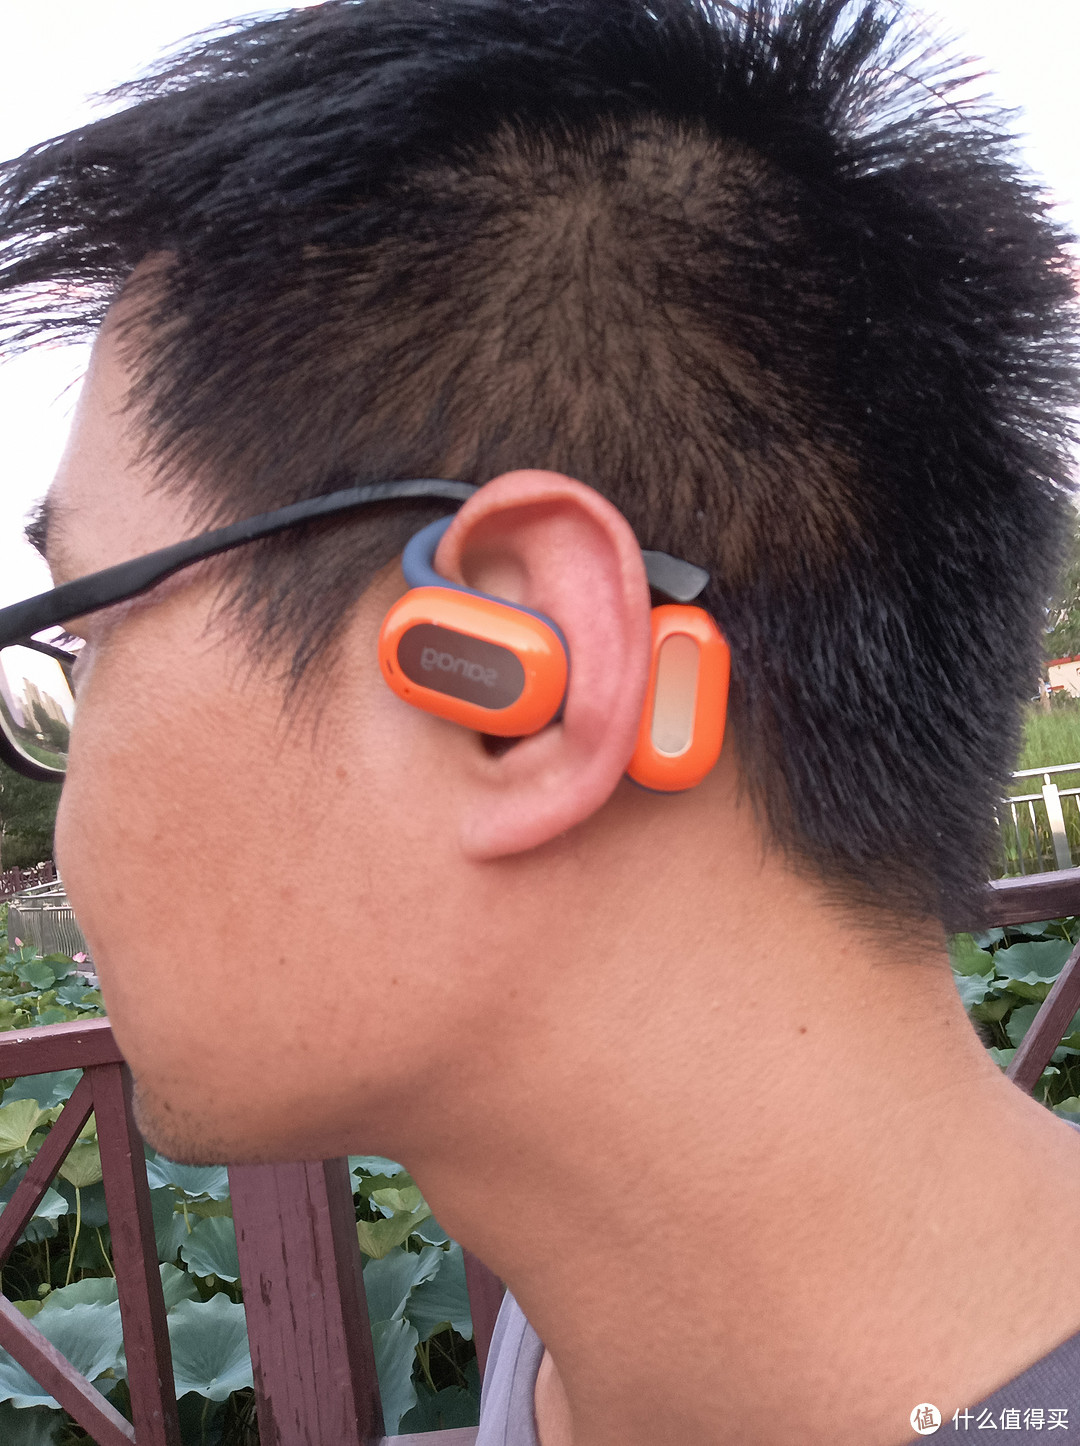 高颜值全开放式蓝牙耳机——sanag塞那Z65试用体验